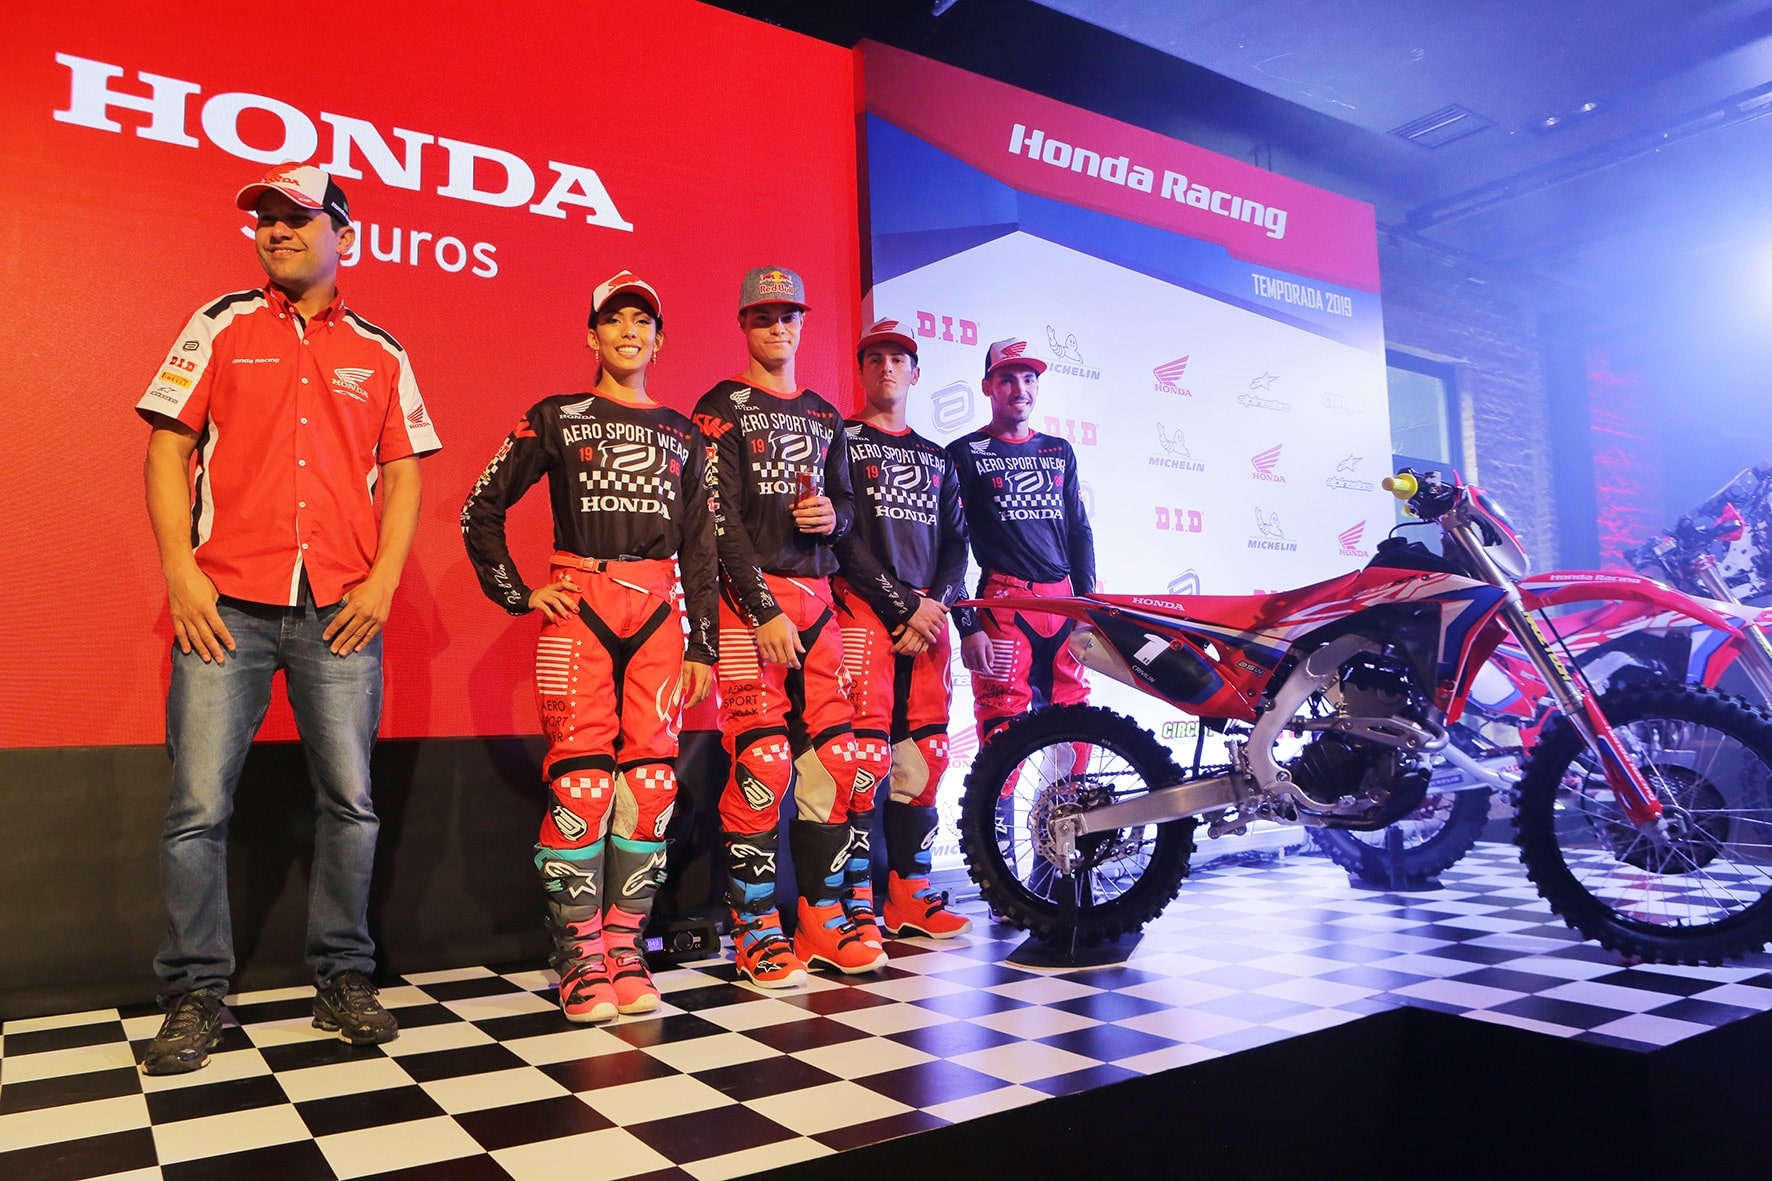 Pilotos da equipe Honda Racing dão dicas para fazer trilhas de moto